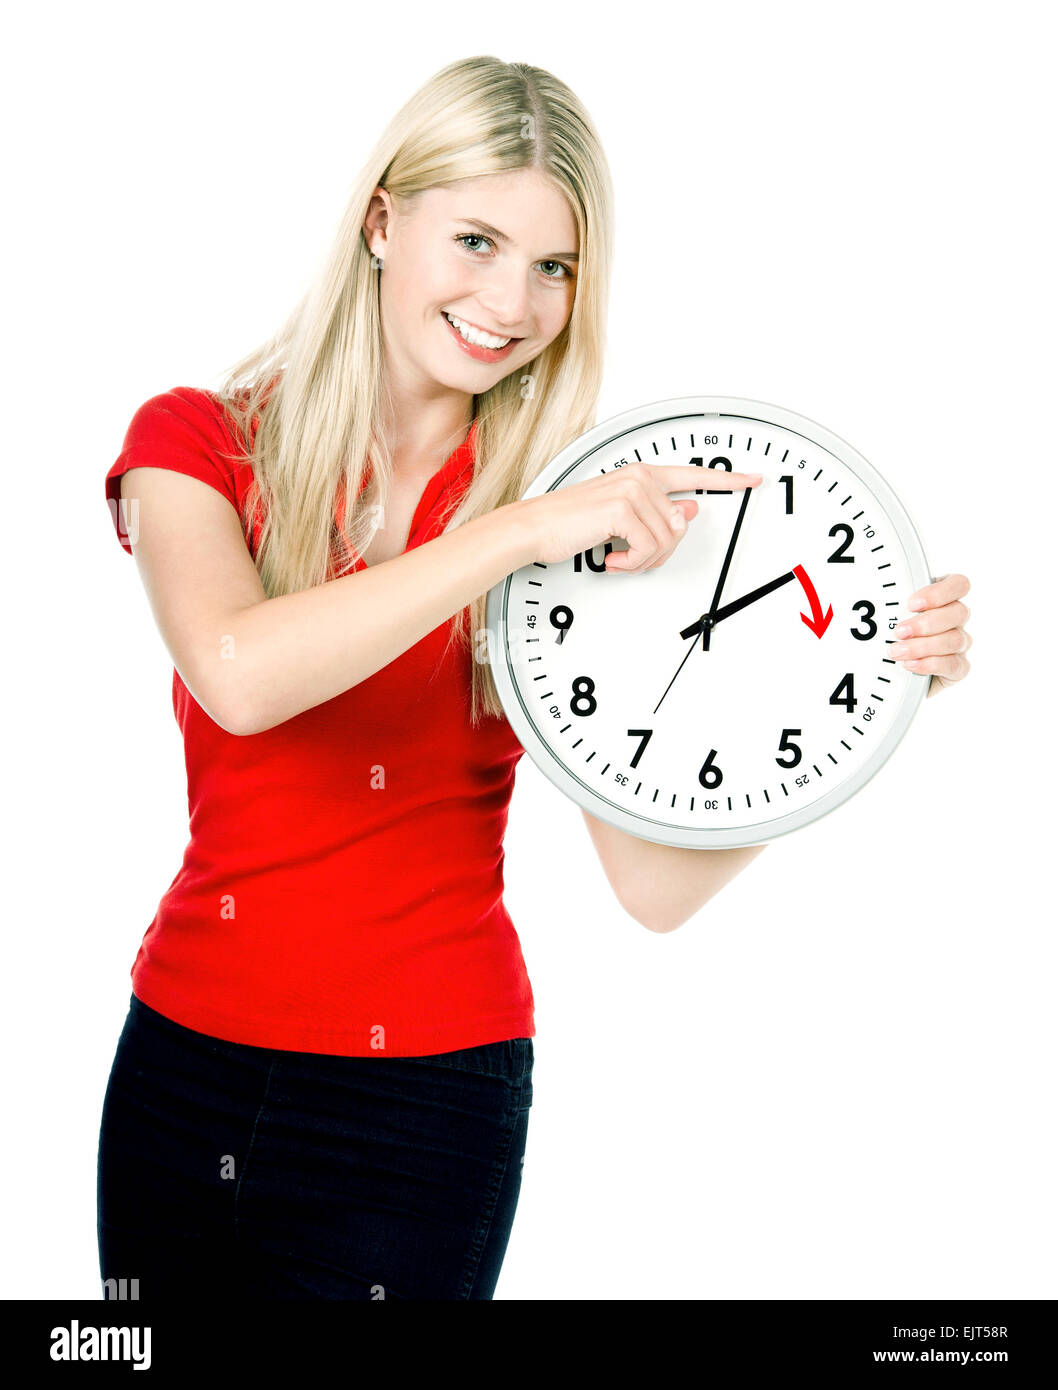 Zeit-Management-Konzept. Daylight Saving Time. Junge lächelnde Frau mit einer Uhr Stockfoto